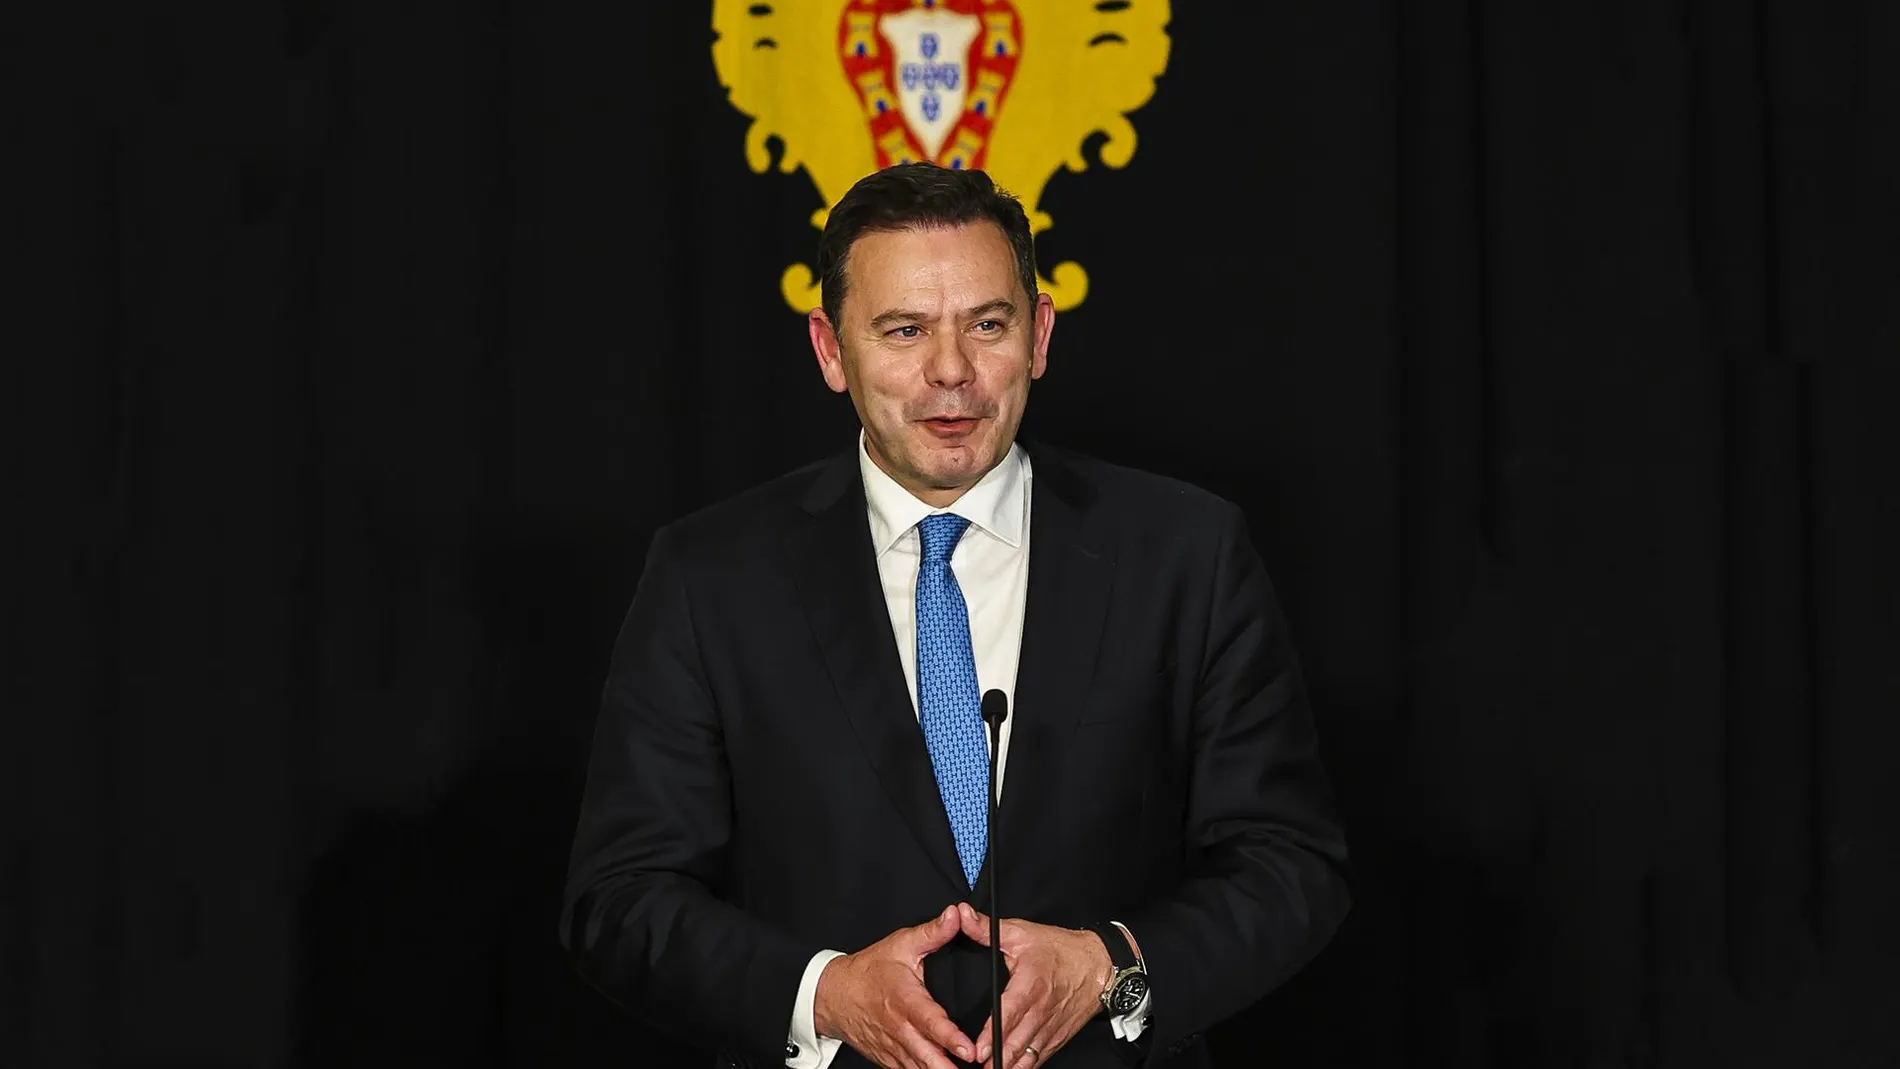 El primer ministro de Portugal visitará España en su primer viaje oficial